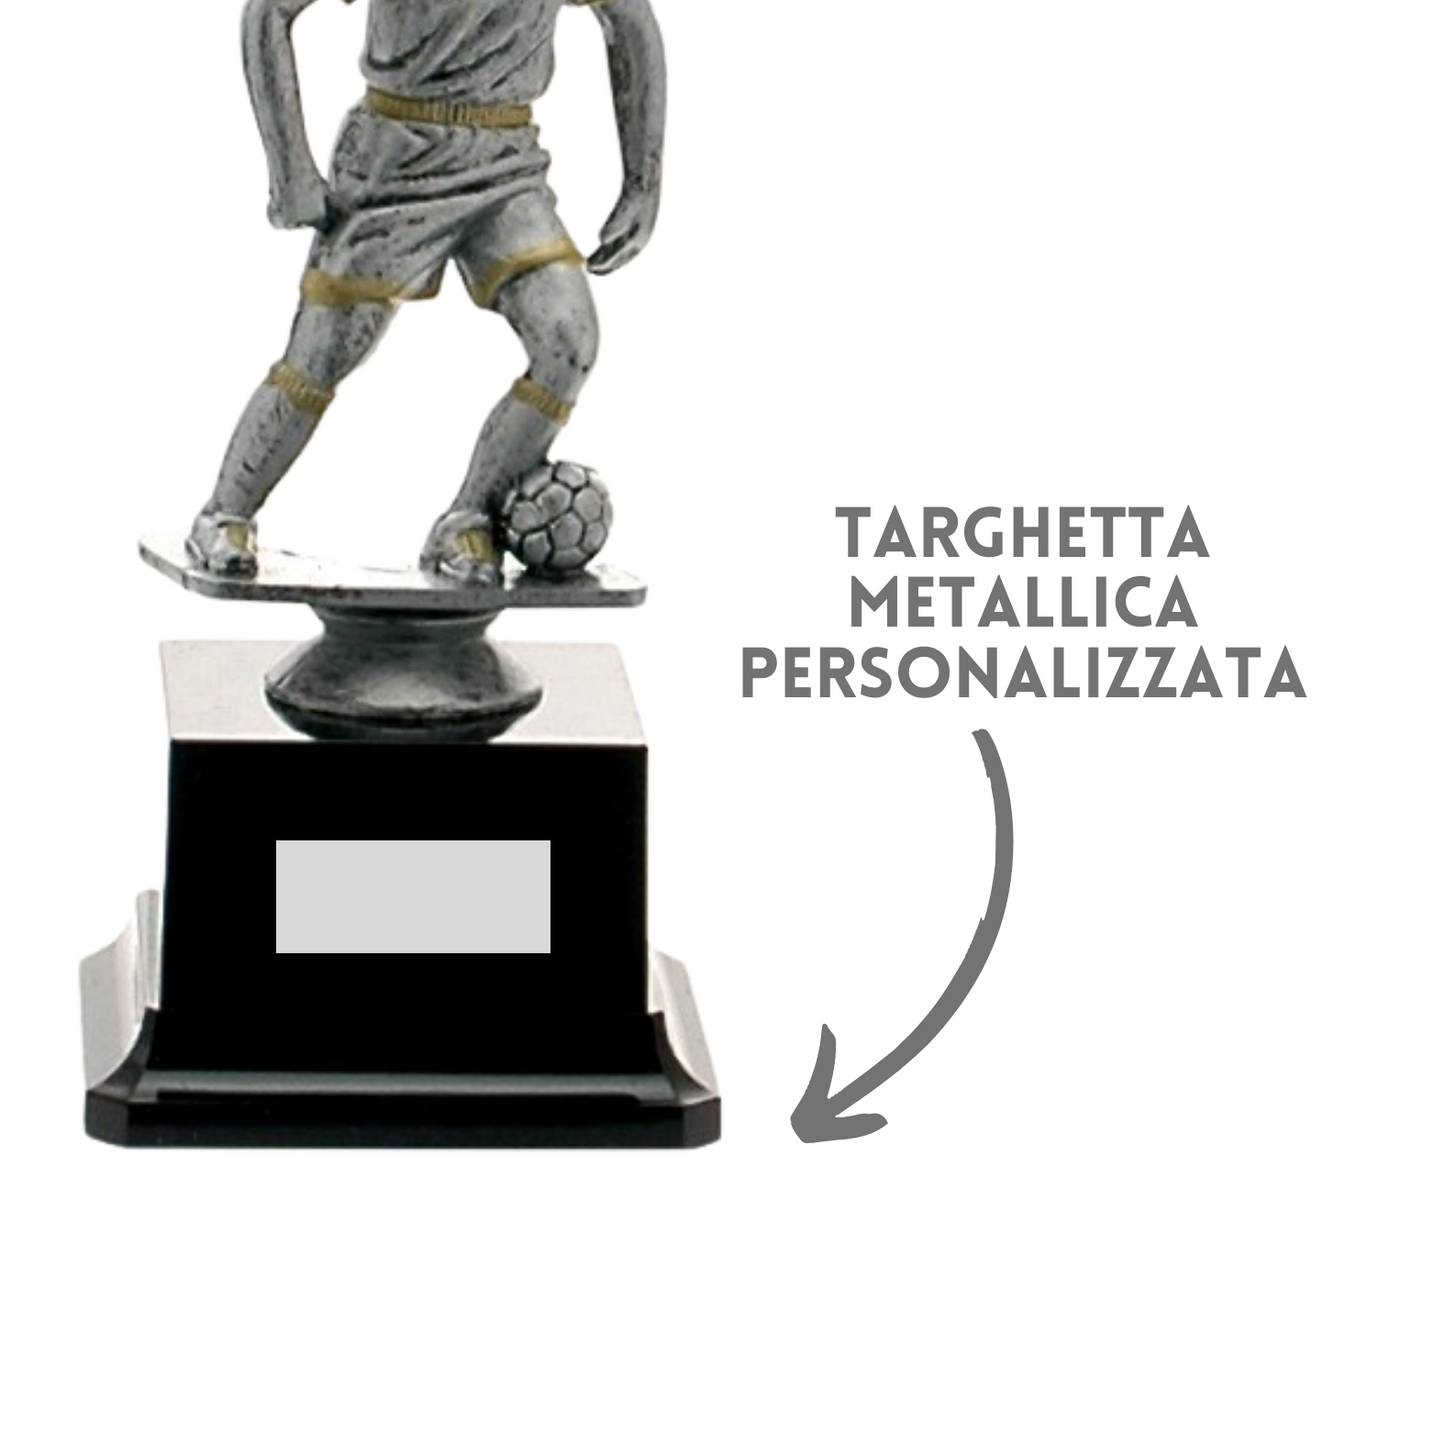 Premiazioni personalizzate premio calcio 14.548